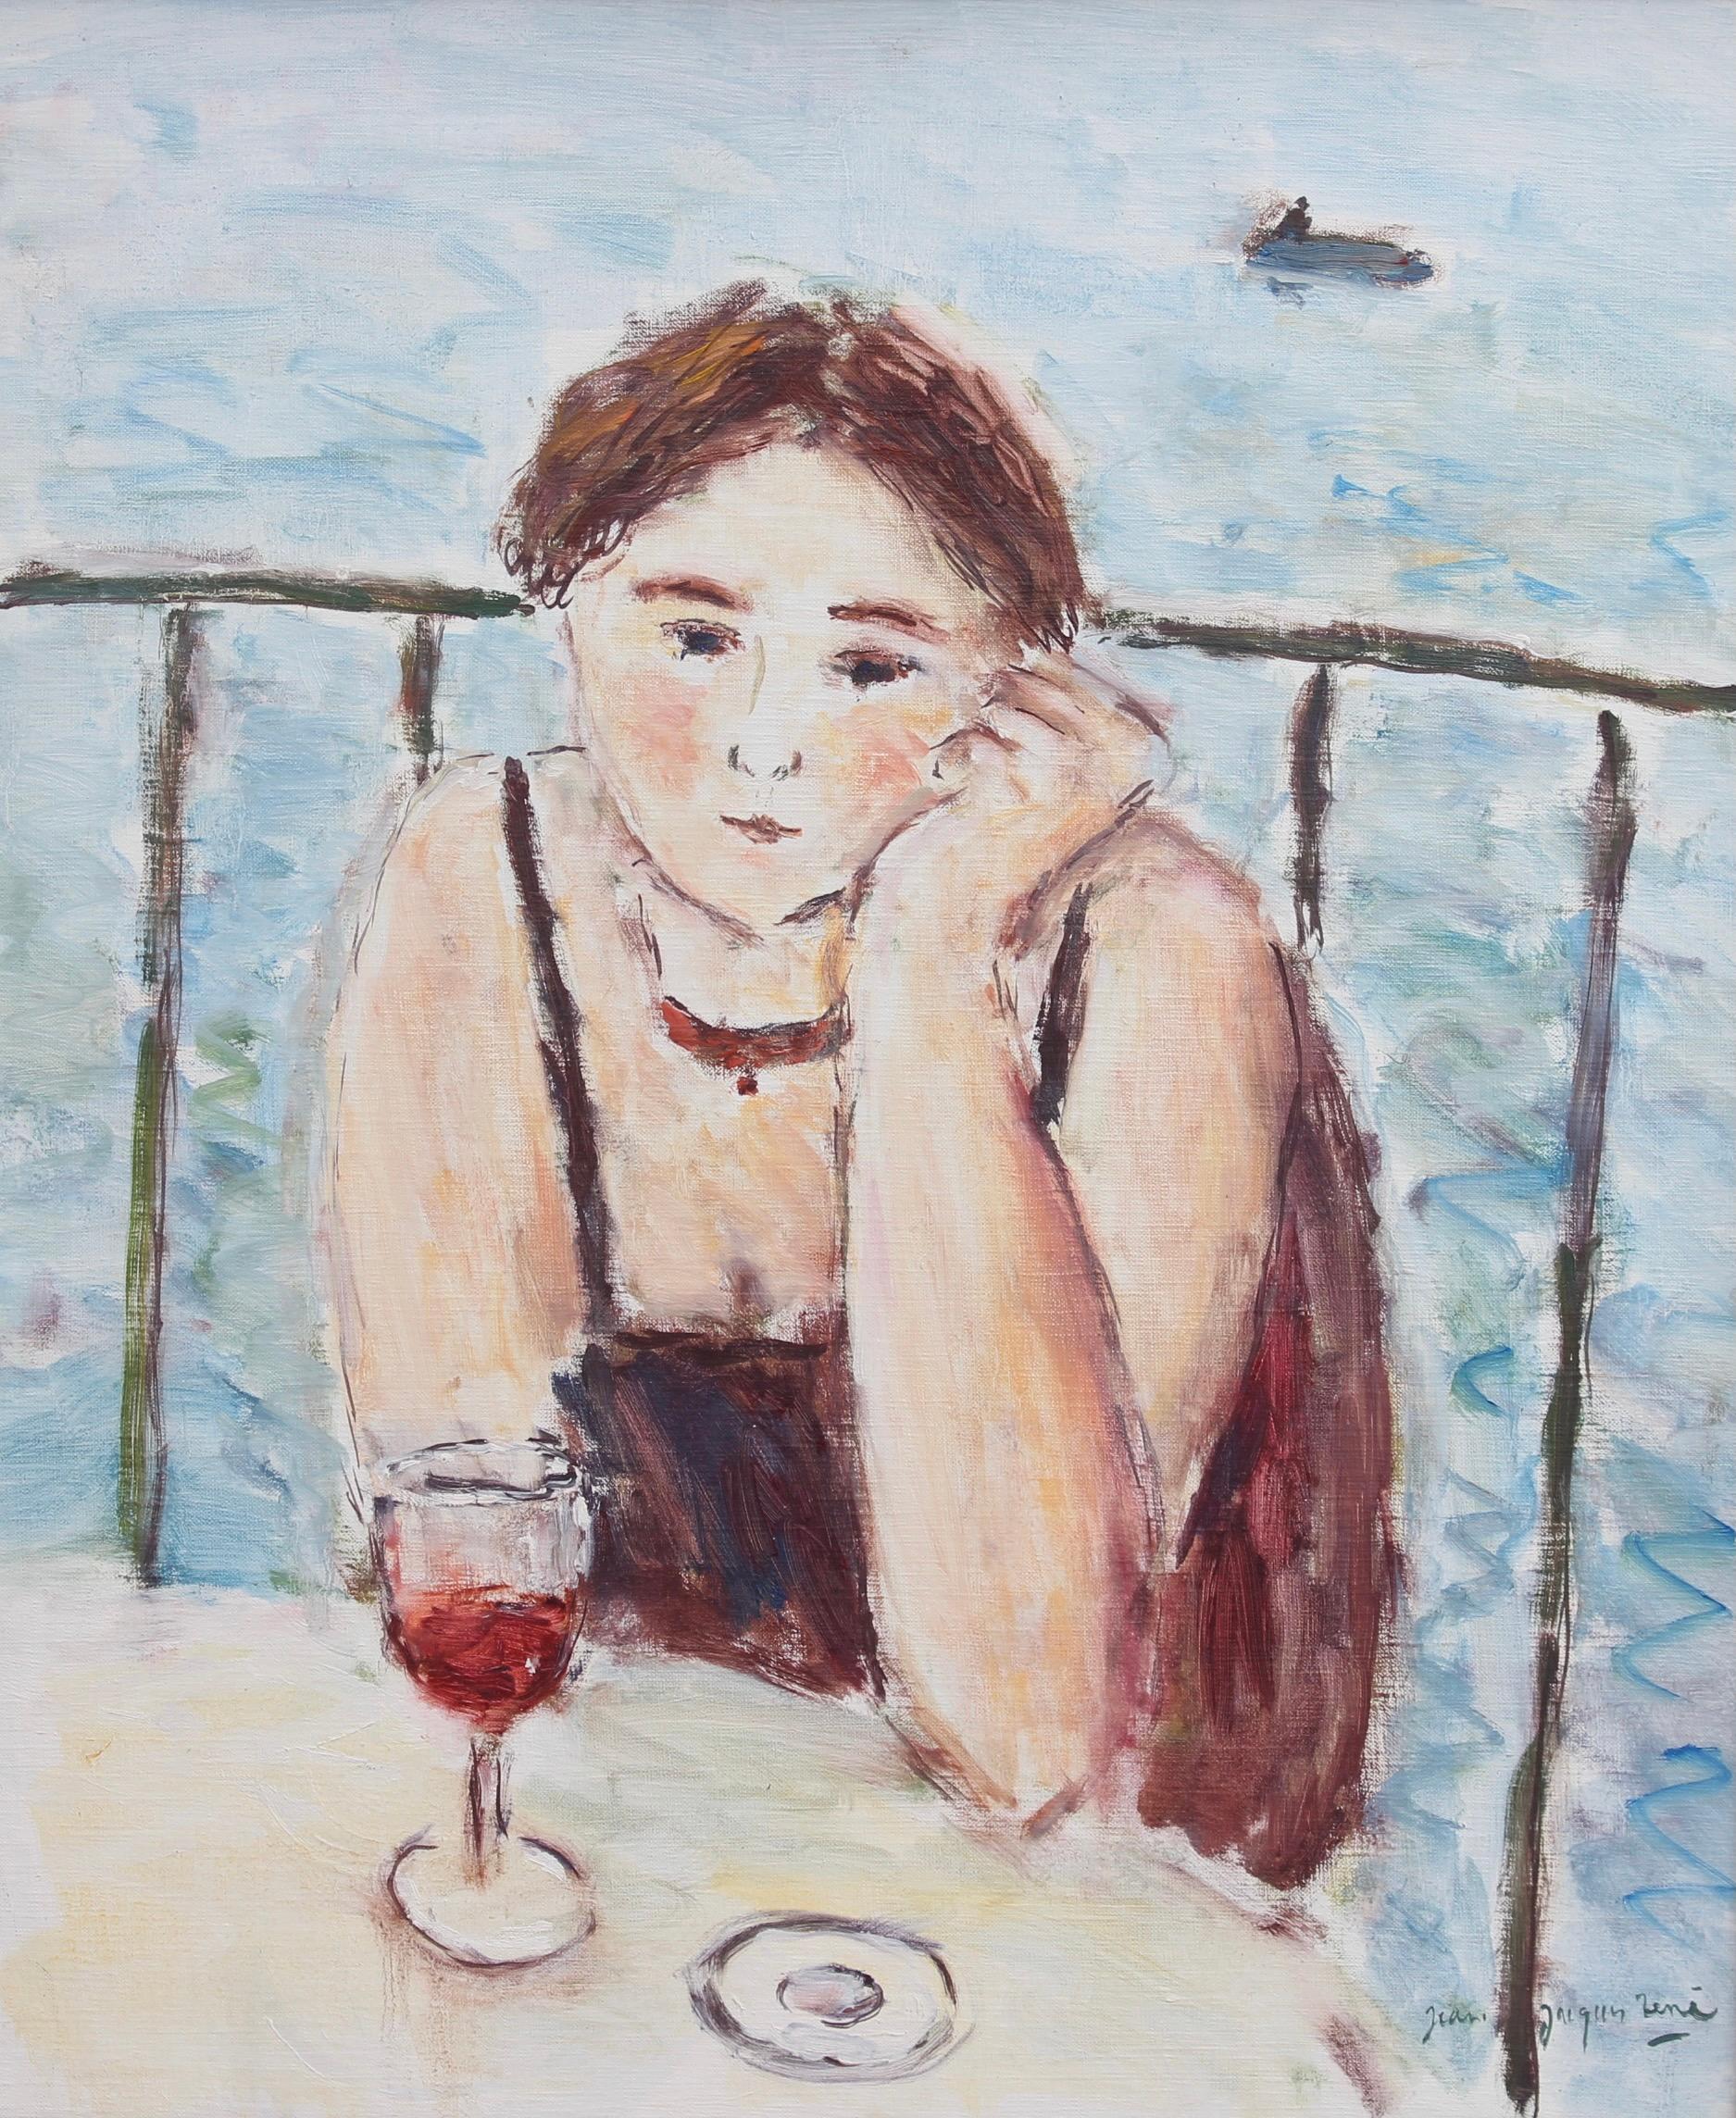 Terrasse en bord de mer, huile sur toile, par Jean-Jacques René (vers les années 1980). Une femme mélancolique est assise sur une terrasse, la mer dans son dos, un canot pneumatique et son unique marin passant derrière elle. Son verre de vin à